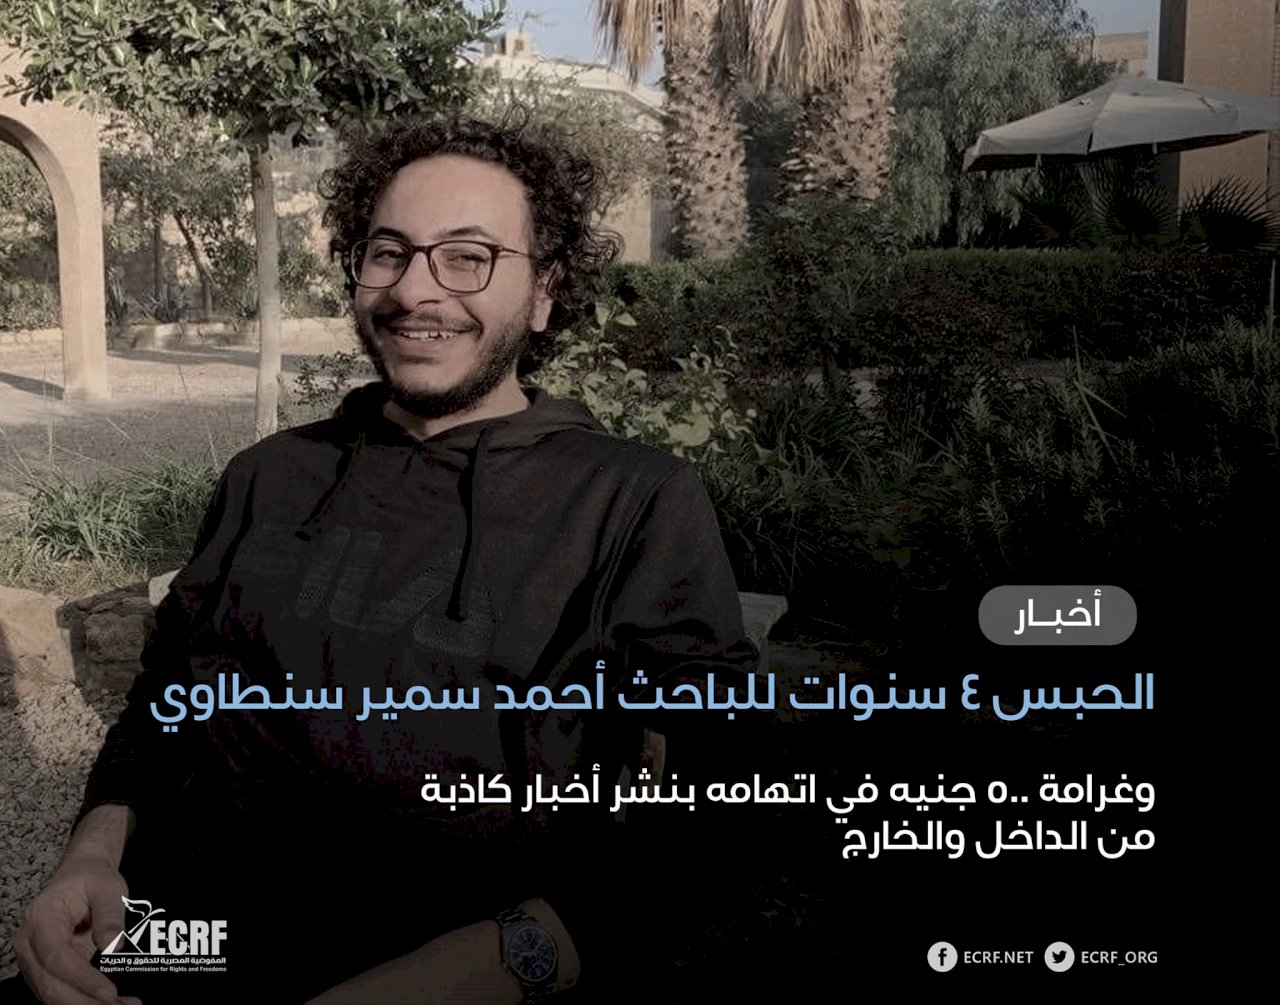 埃及學生被控散布假新聞遭判4年 人權團體譴責